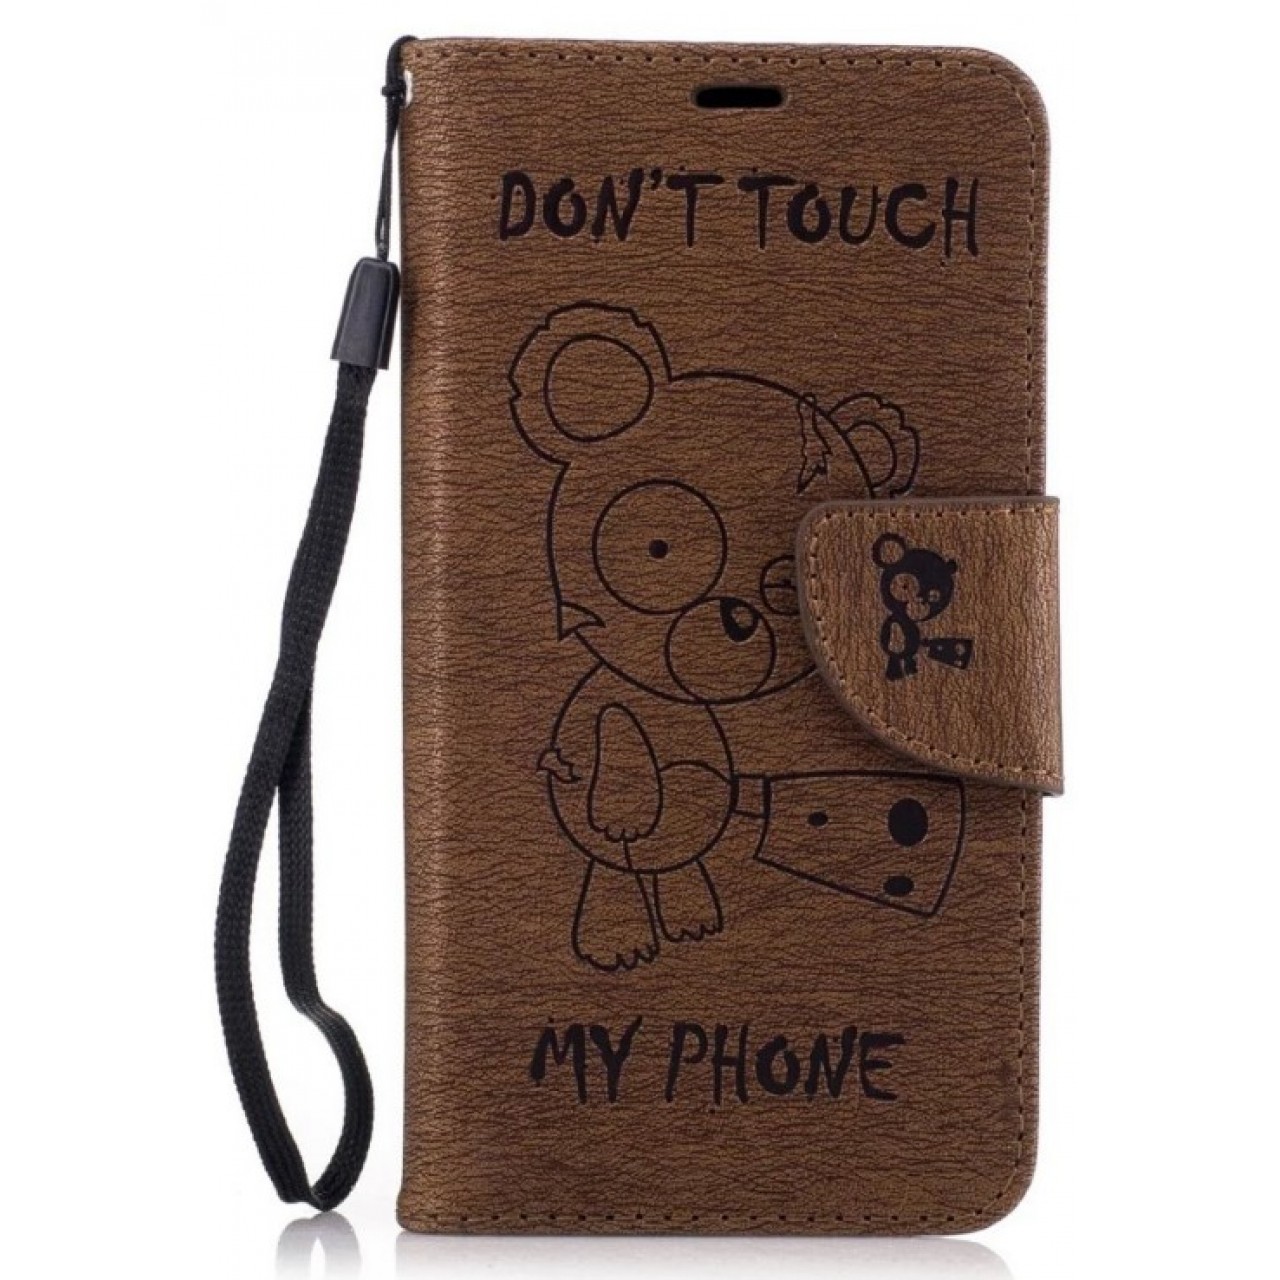 Θήκη Samsung Galaxy J3 Emerge / J3 Prime PU Leather Πορτοφόλι flip Don t touch my phone - 2397 - Καφέ - OEM